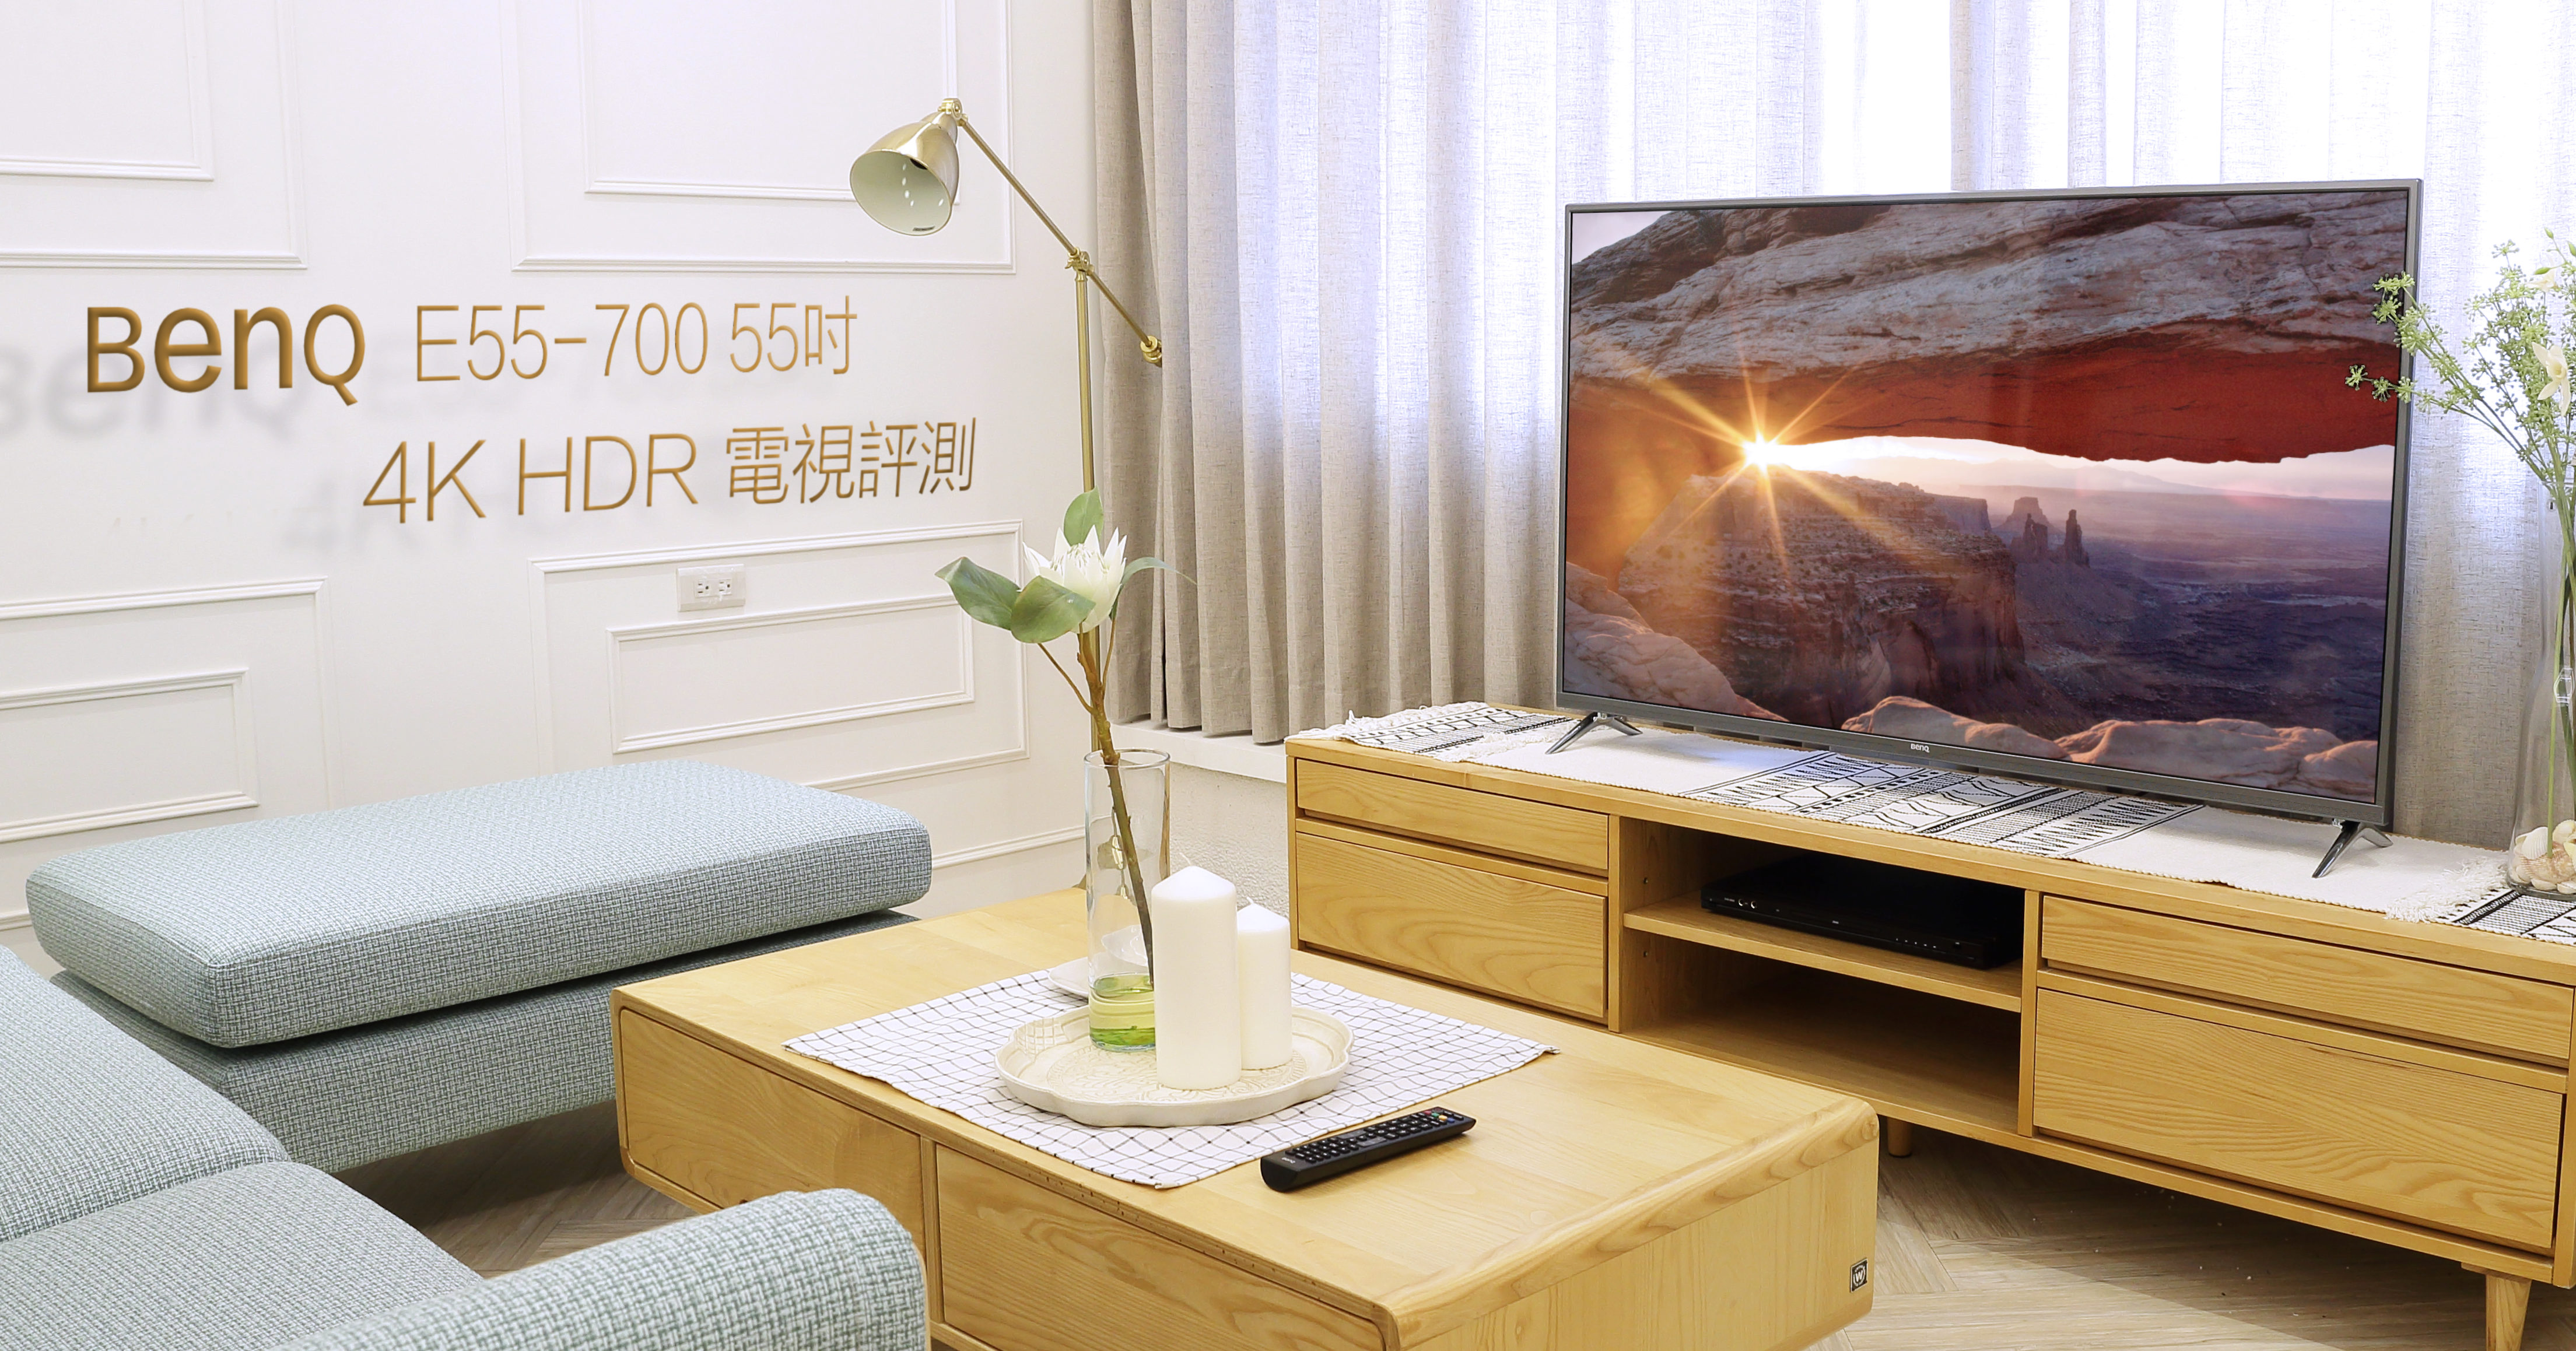 專注護眼科技的BenQ，推出最新的4K HDR 智慧藍光2.0 55吋液晶電視